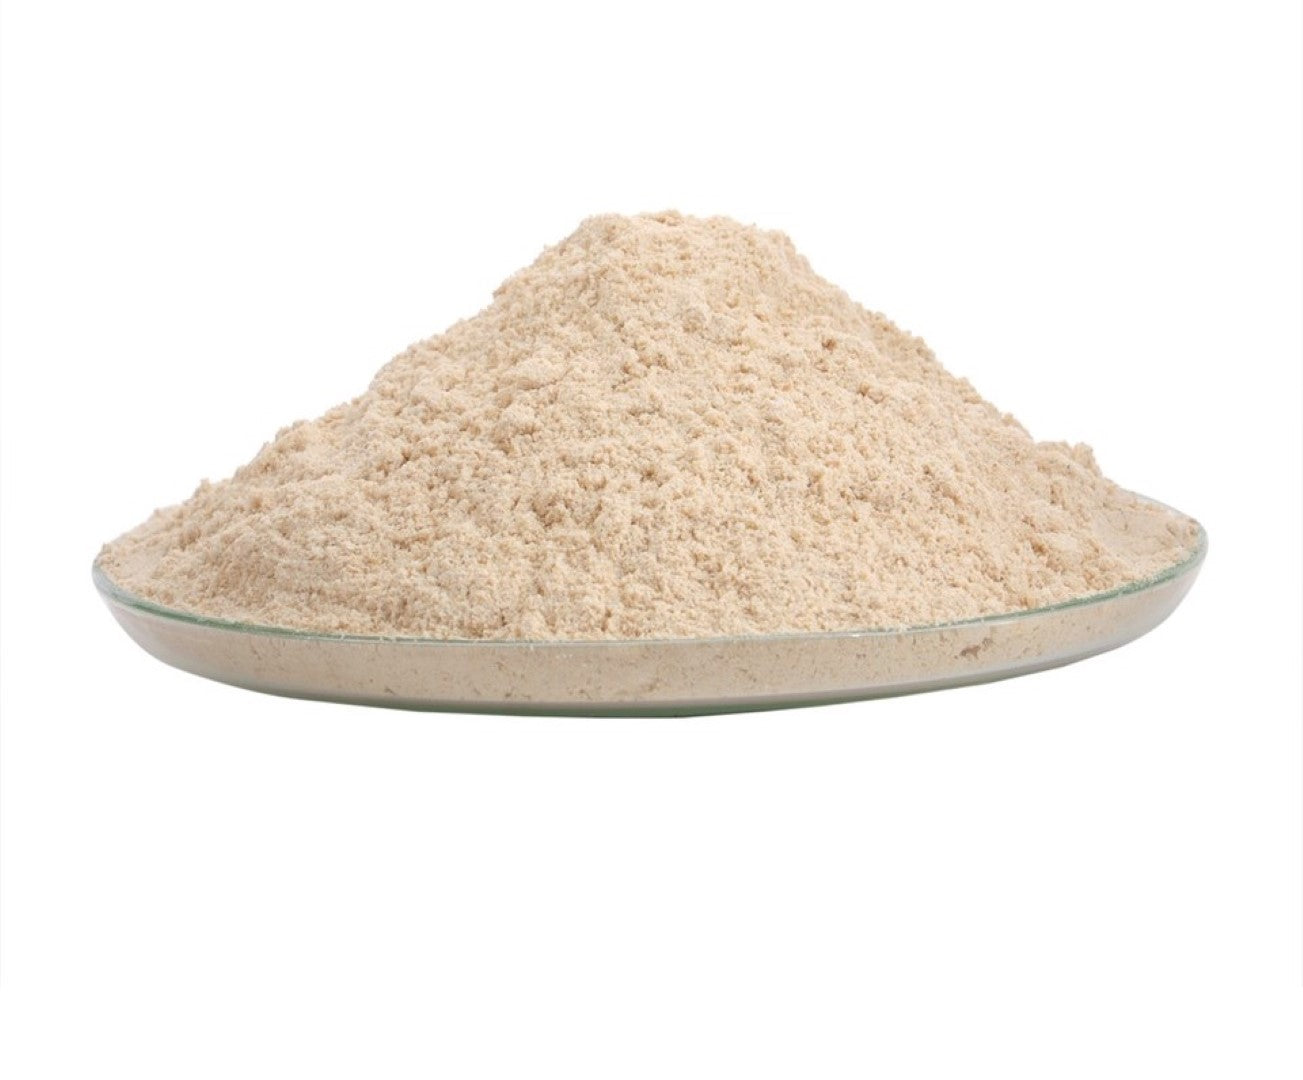 Baking- Whole Wheat Flour